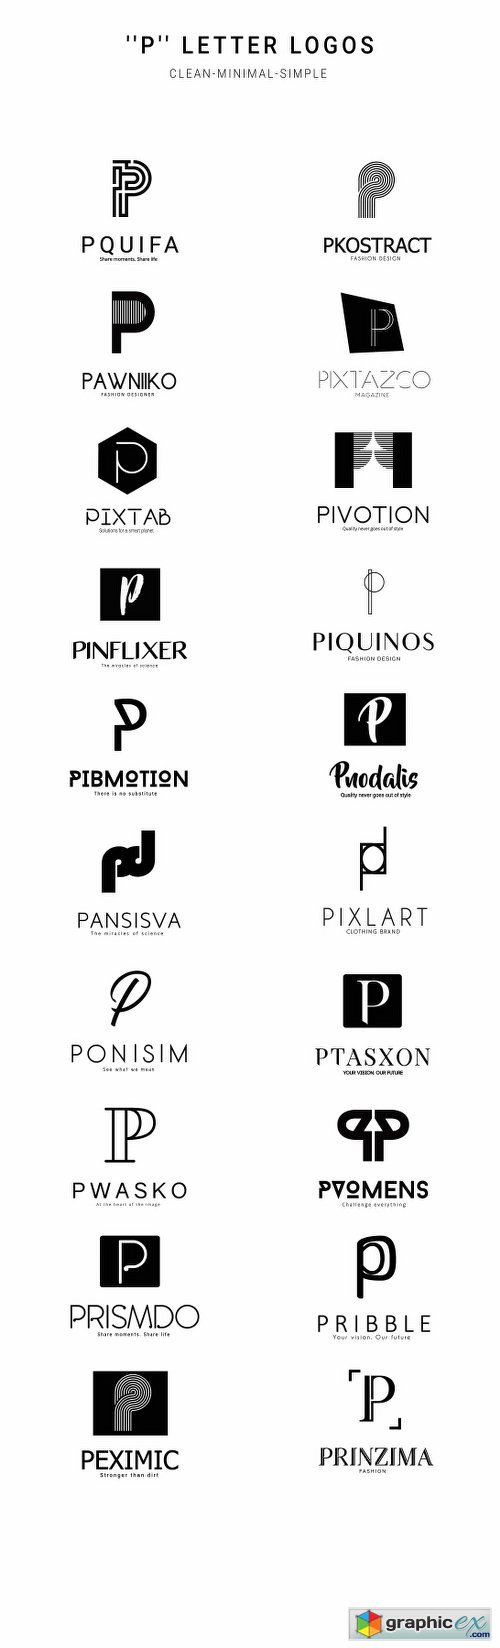 20 "P" Letter Alphabetic Logos